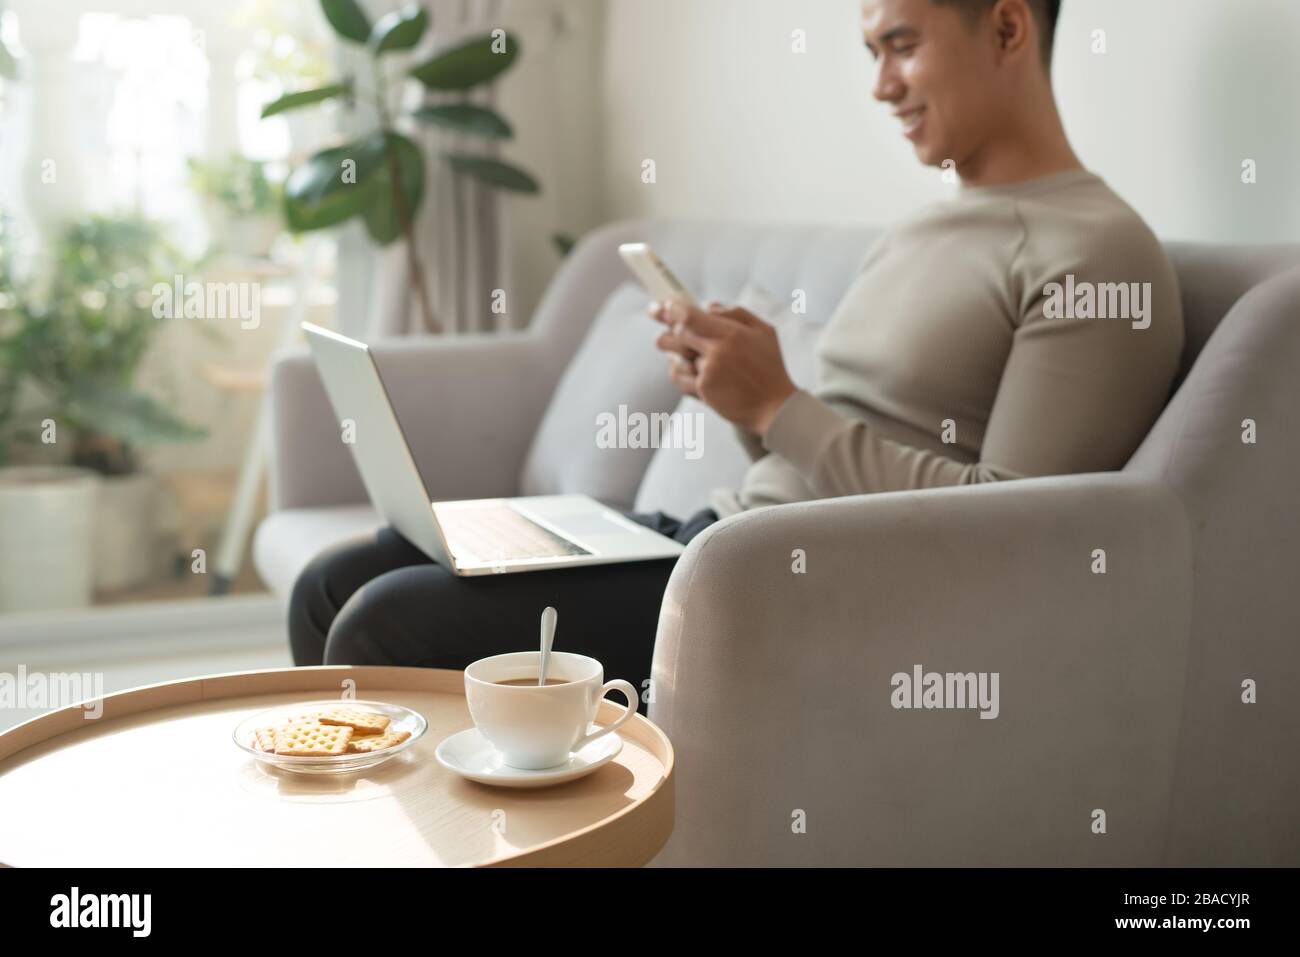 Homme utilisant un smartphone et un ordinateur portable sur un canapé Banque D'Images